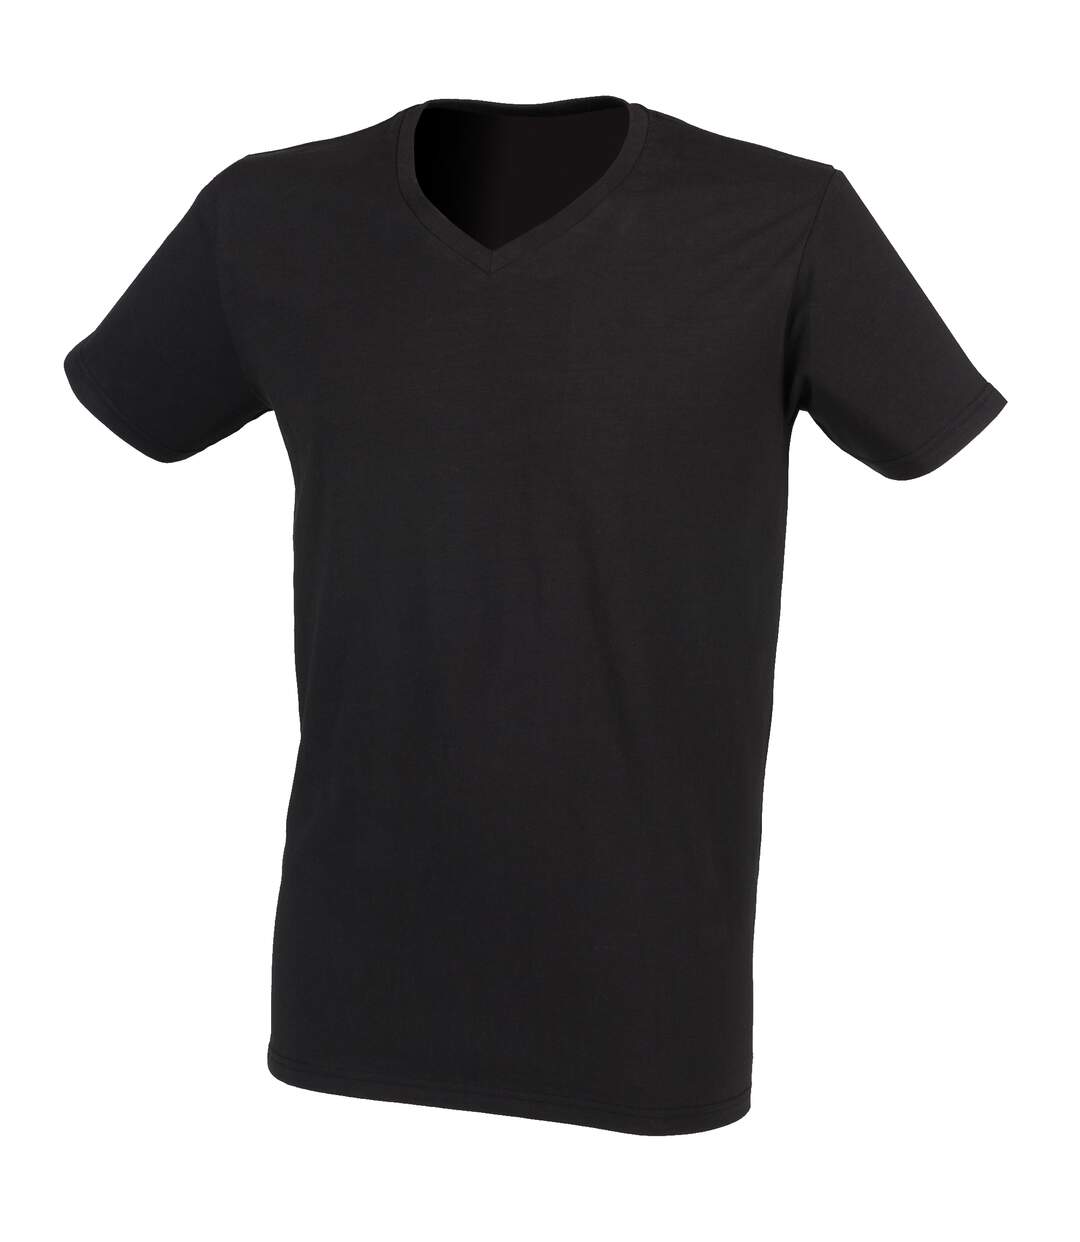 Skinni Fit - T-shirt à manches courtes et col en V - Homme (Noir) - UTRW4428